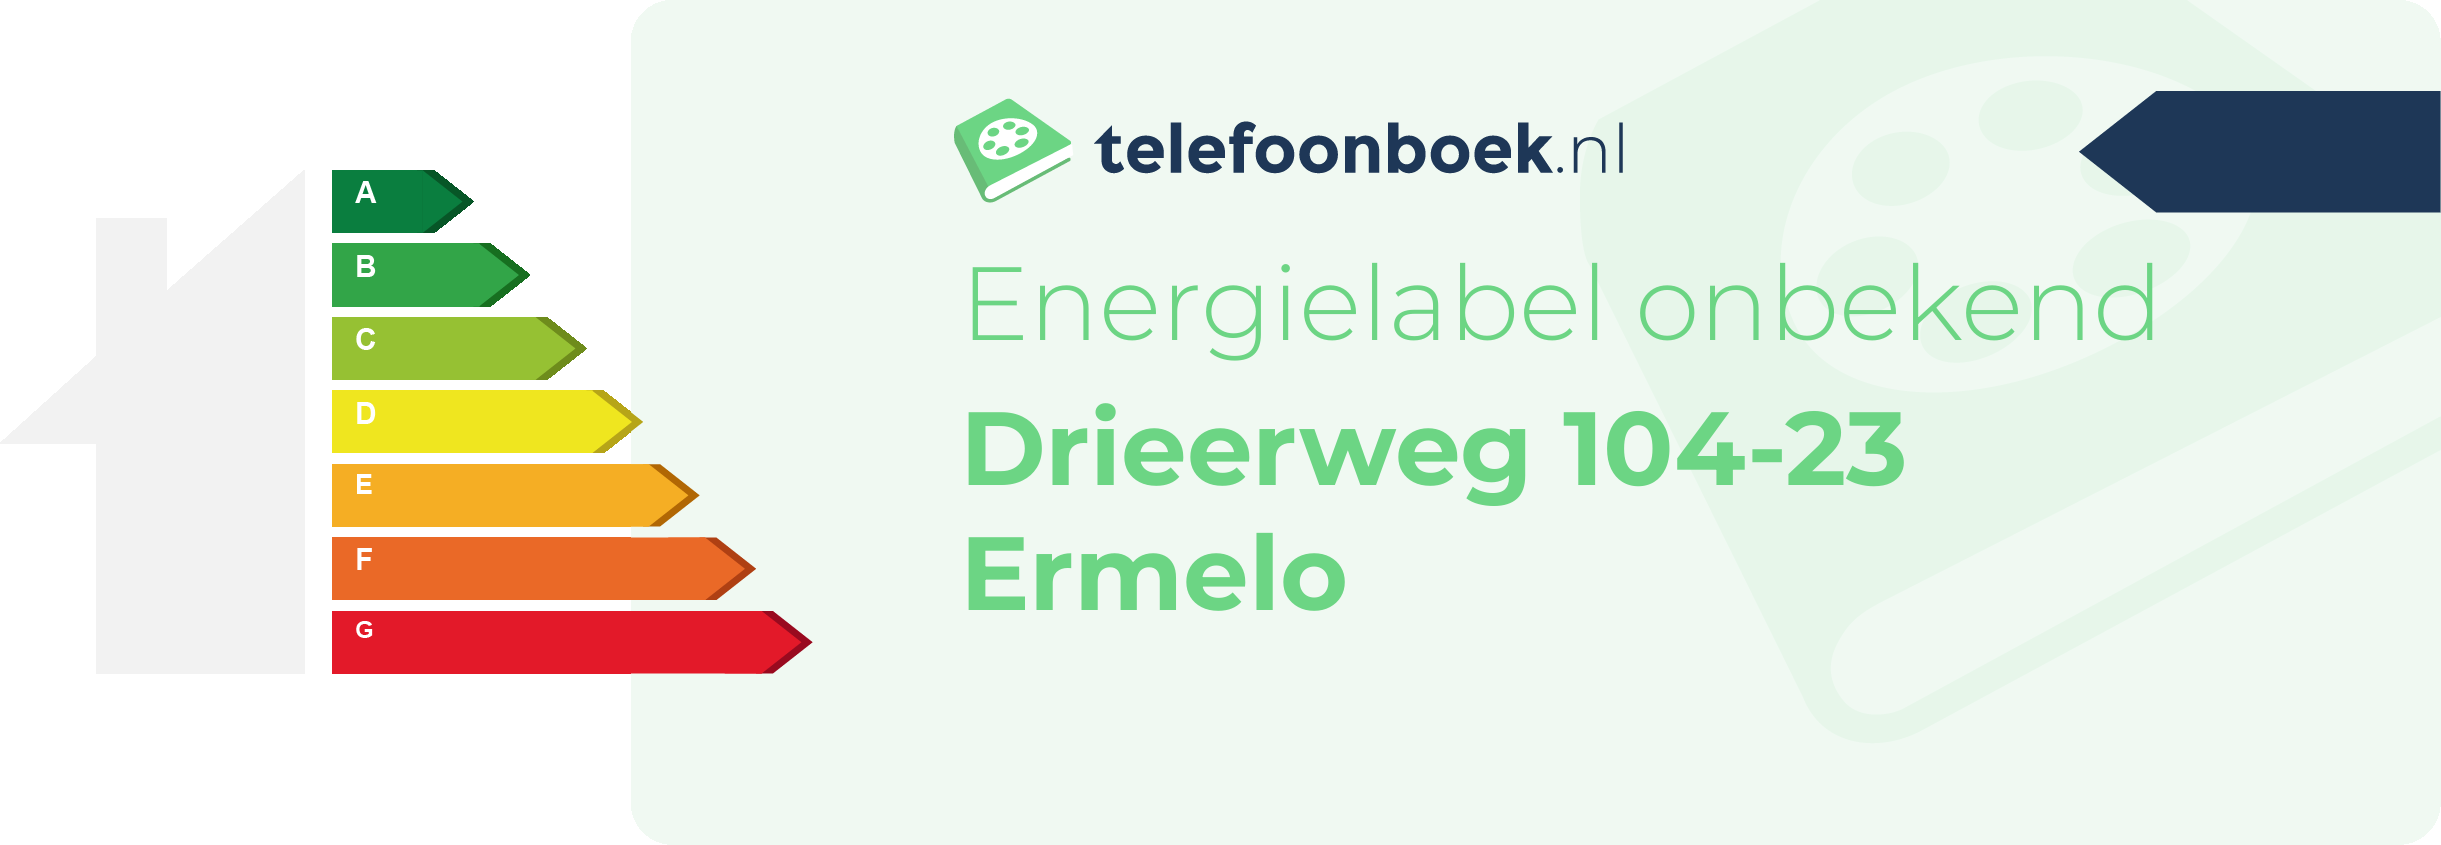 Energielabel Drieerweg 104-23 Ermelo